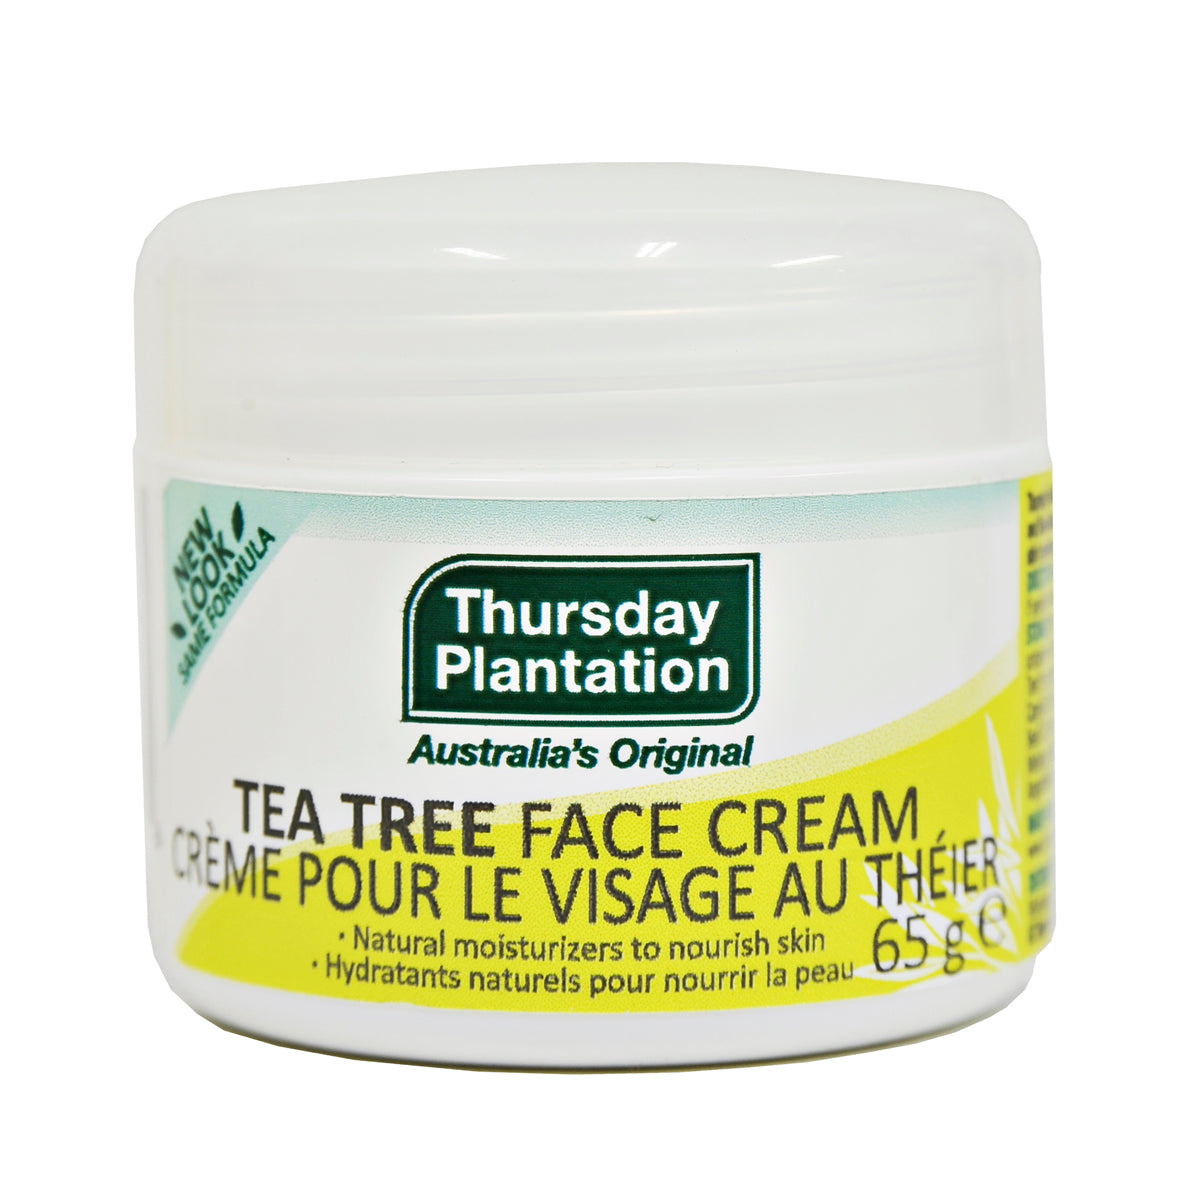 Crème visage tea tree (étape 3) 65mg